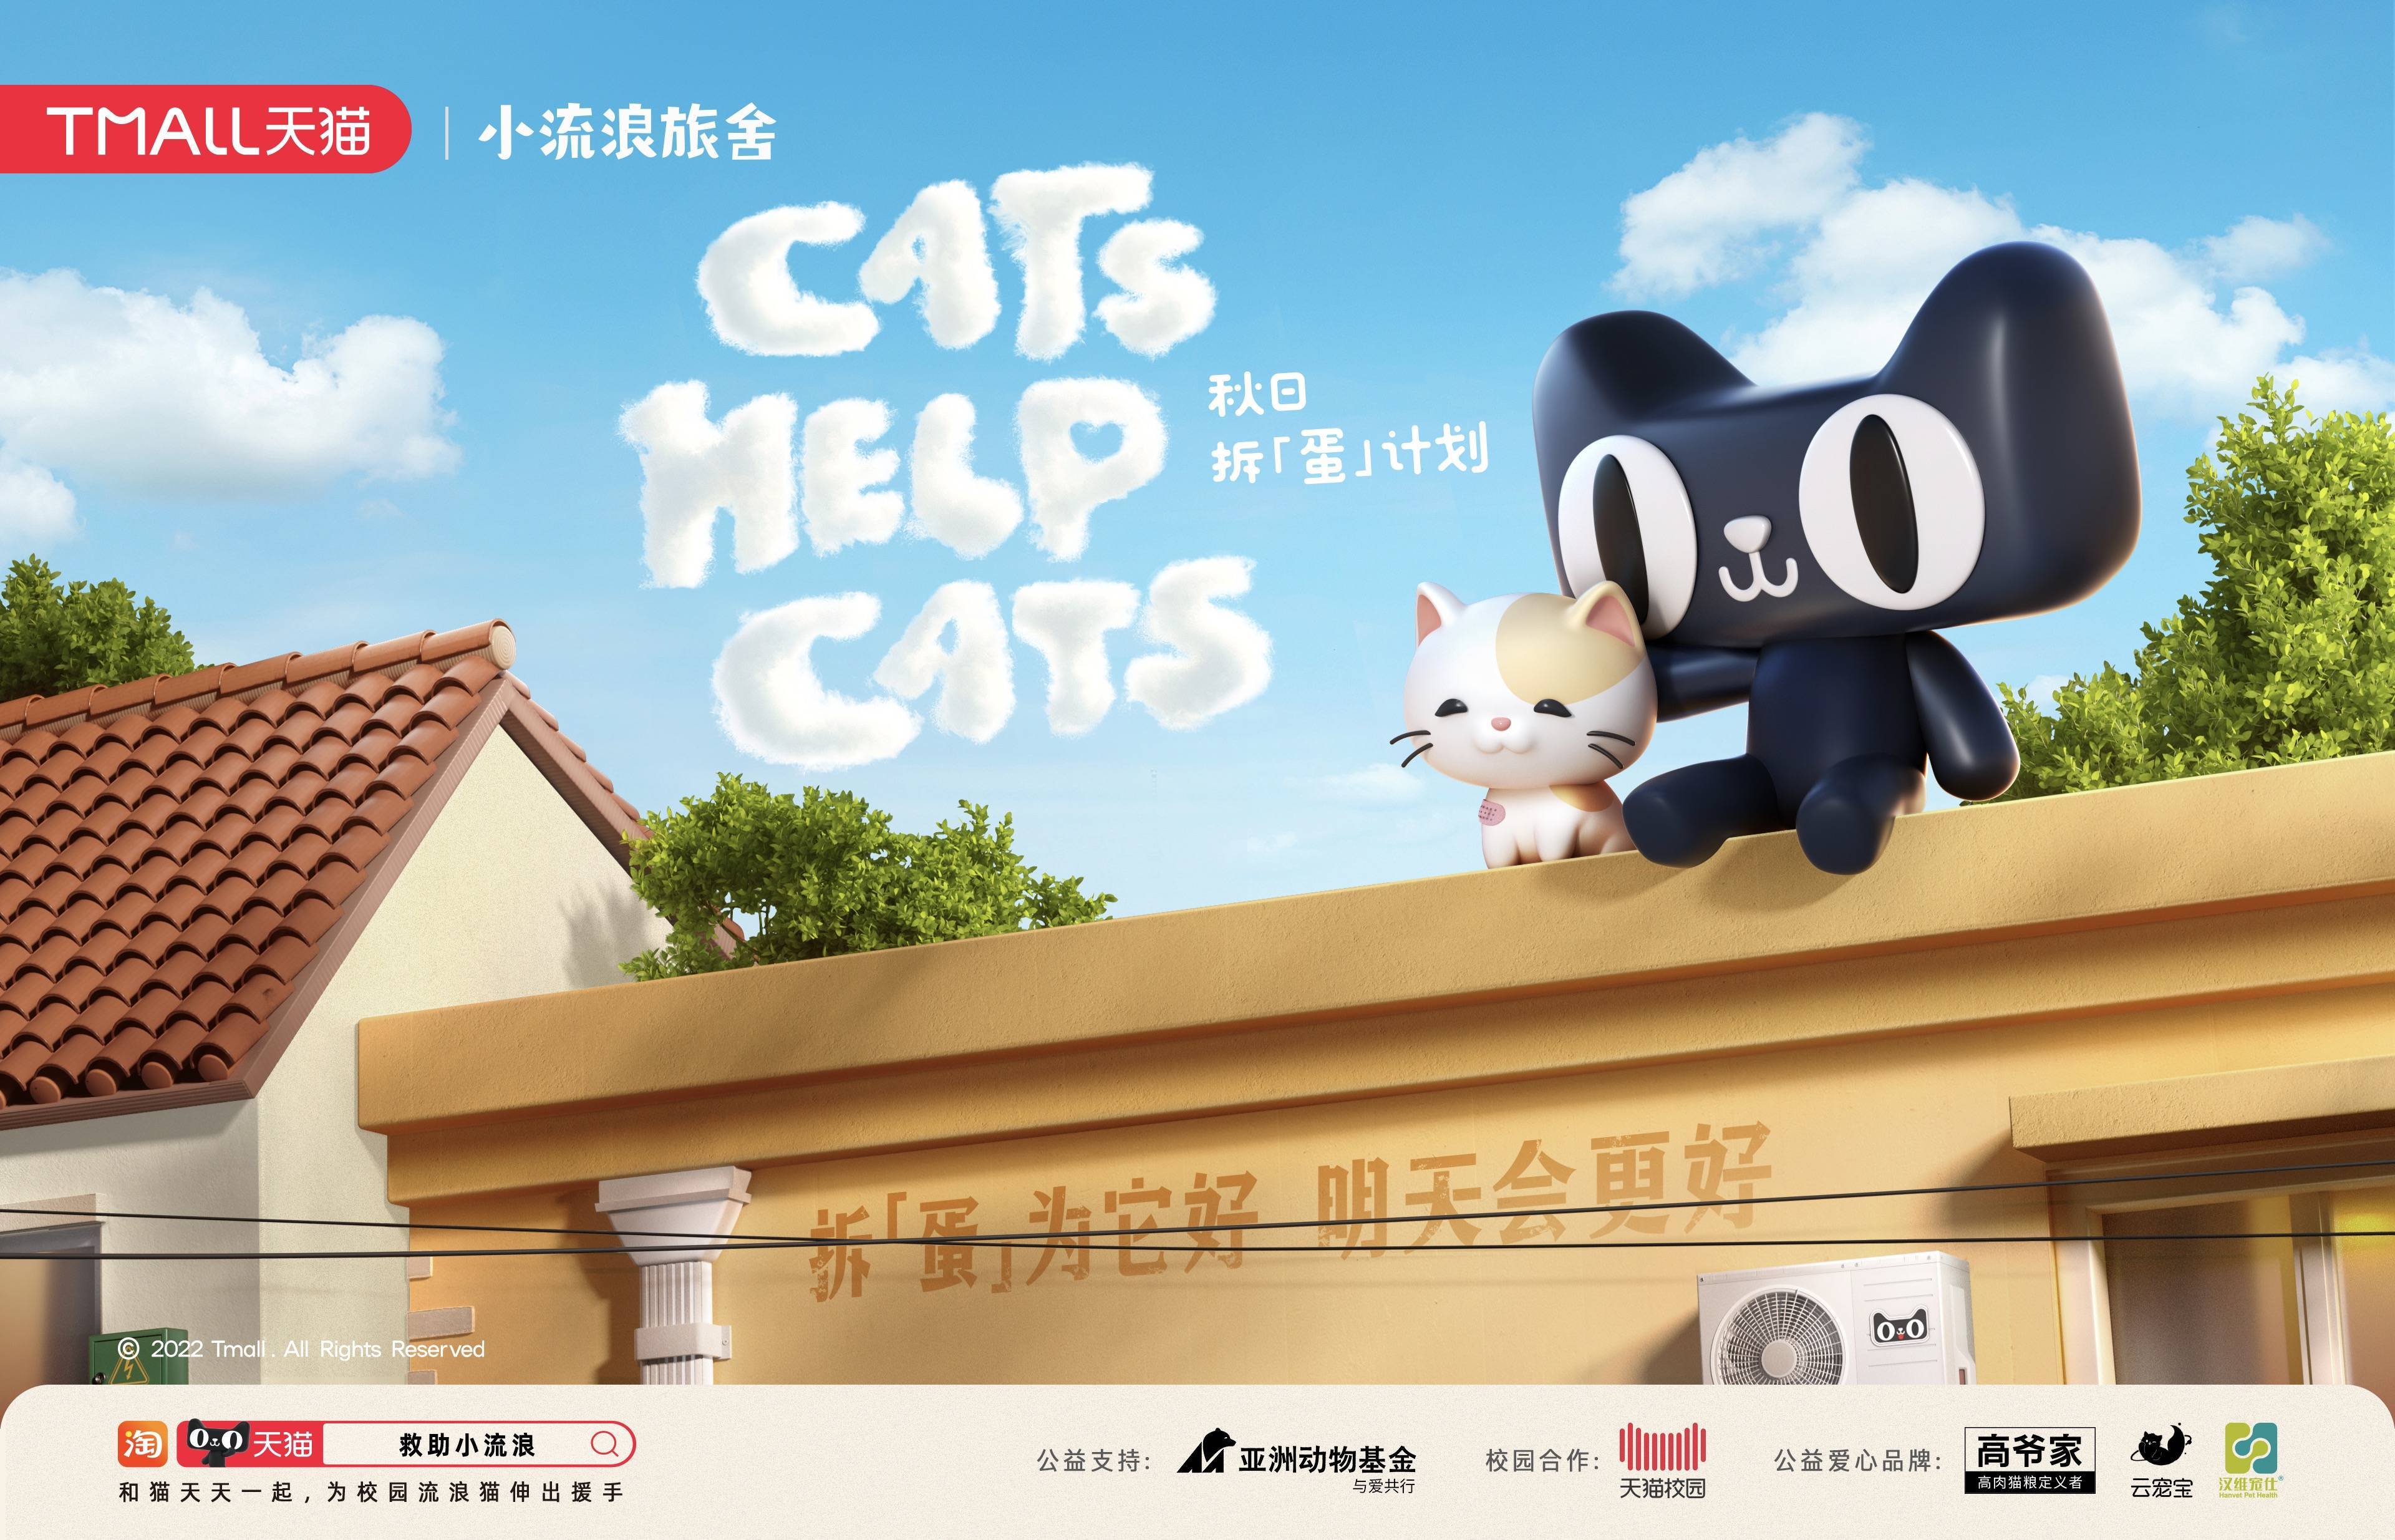 cats help cats｜天猫携手亚洲动物基金救助校园流浪猫